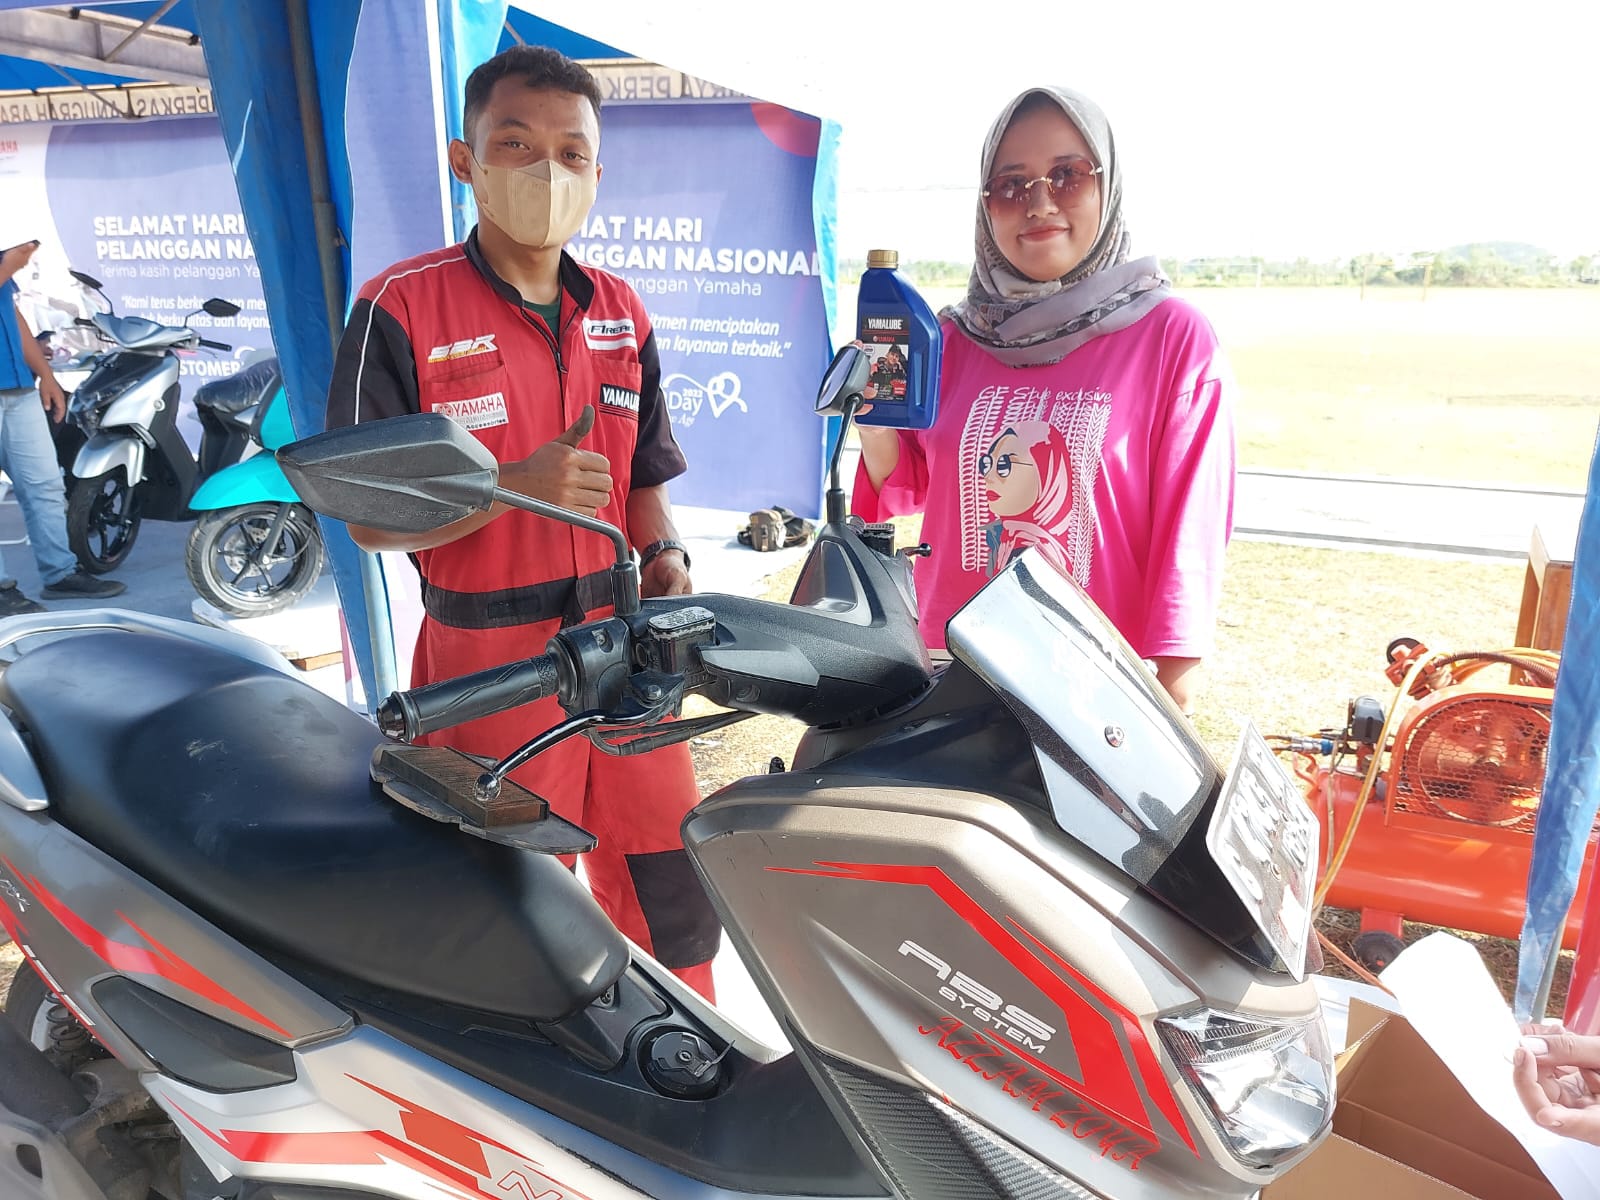 Yamaha Apresiasi Pelanggan Setia, Berikan Servis dan Oli Gratis di Jawa Tengah & Yogyakarta 